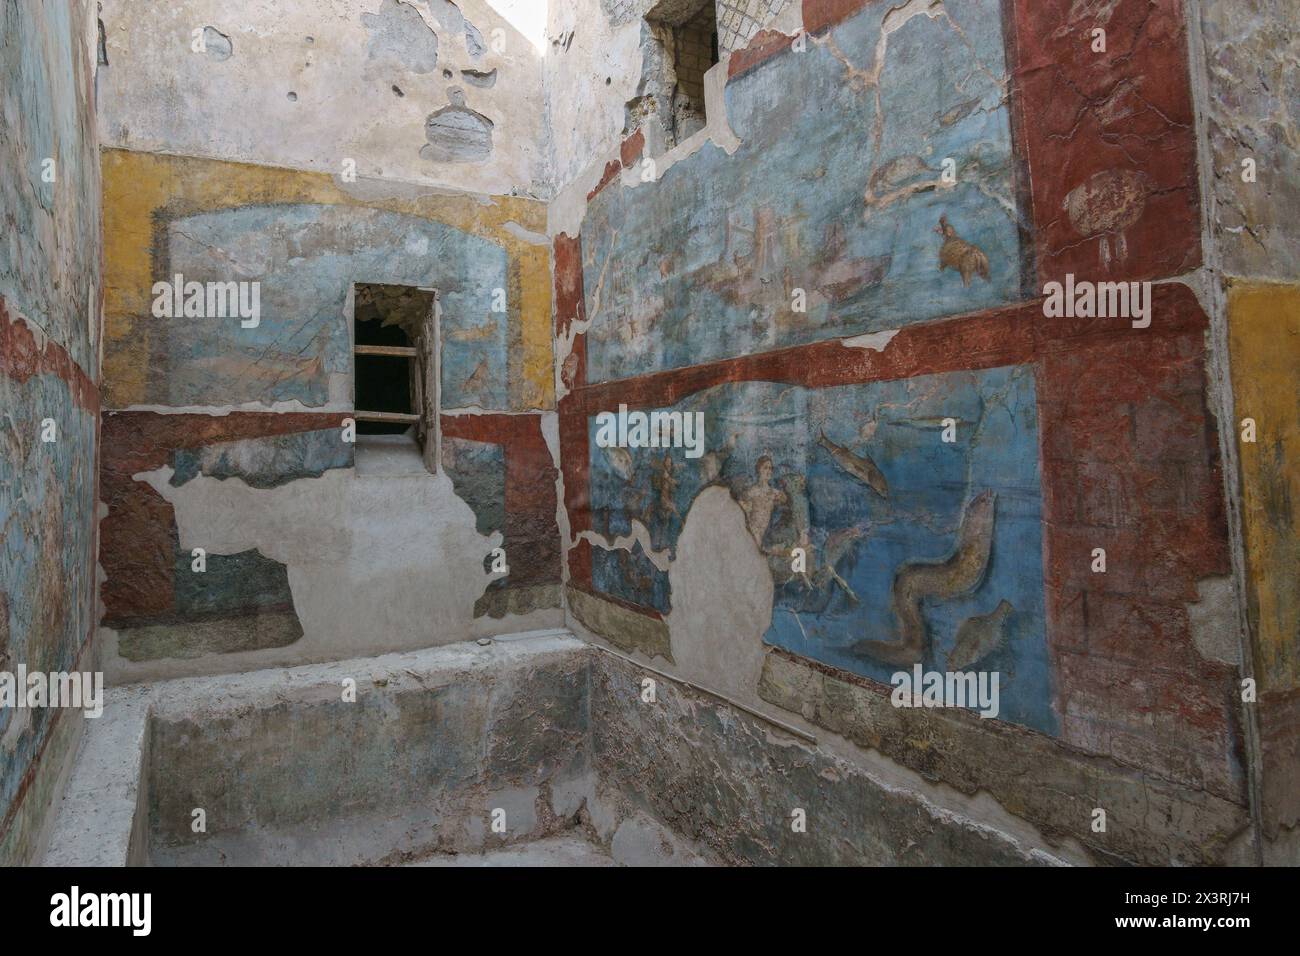 Ammira dall'interno le rovine delle antiche terme romane suburbane con splendide opere d'arte colorate sulle mura della città distrutta di Pompei, Campania, Italia Foto Stock